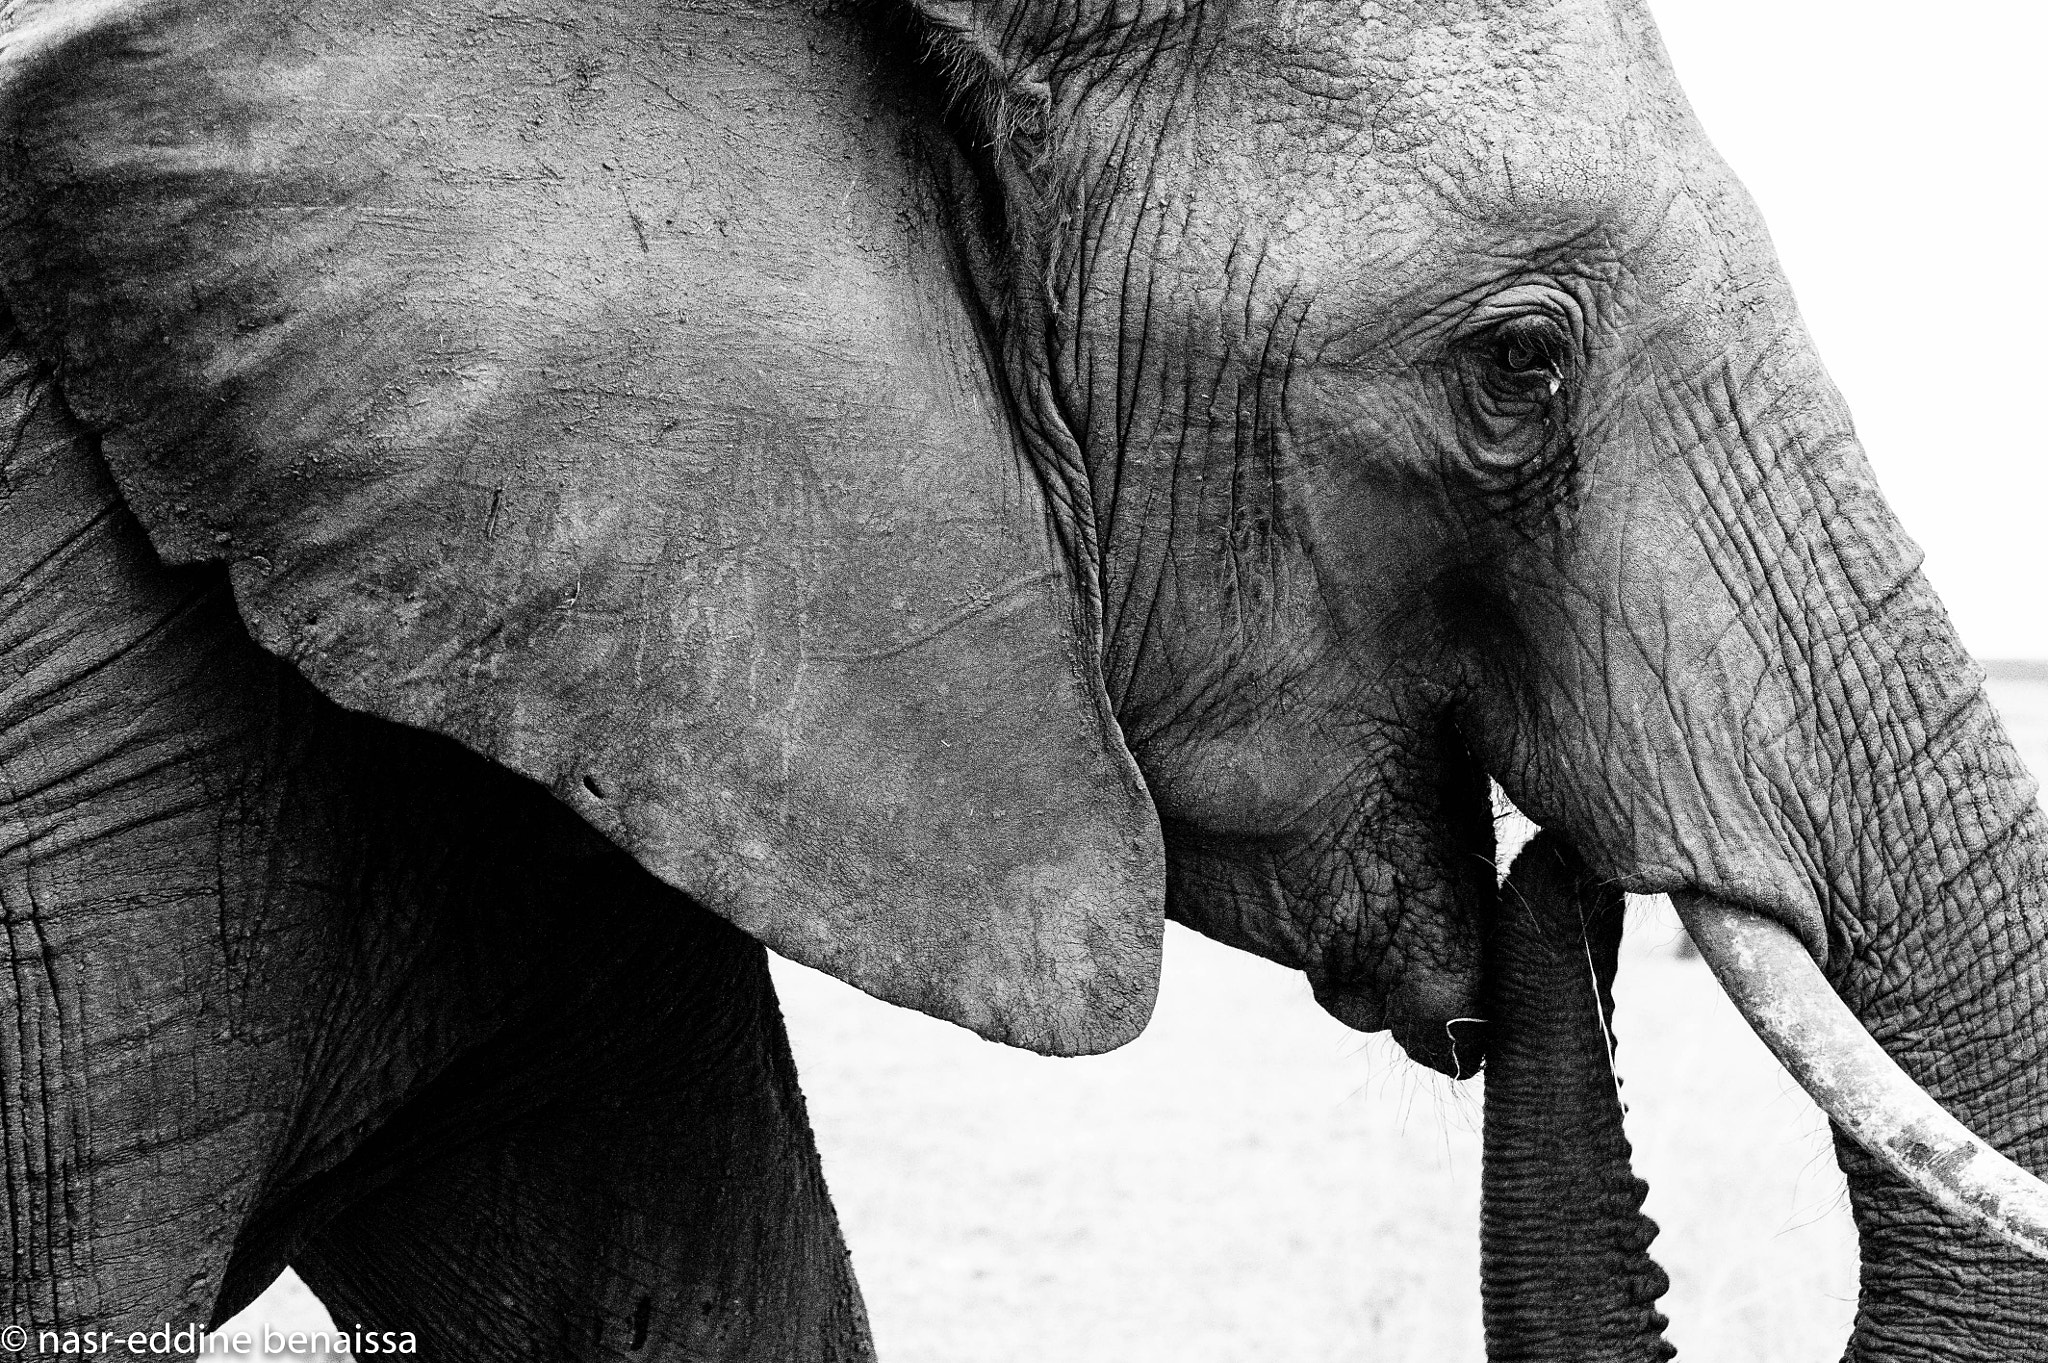 Nikon D3S + Nikon AF-S Nikkor 70-300mm F4.5-5.6G VR sample photo. Elephant portrait (of ) photography